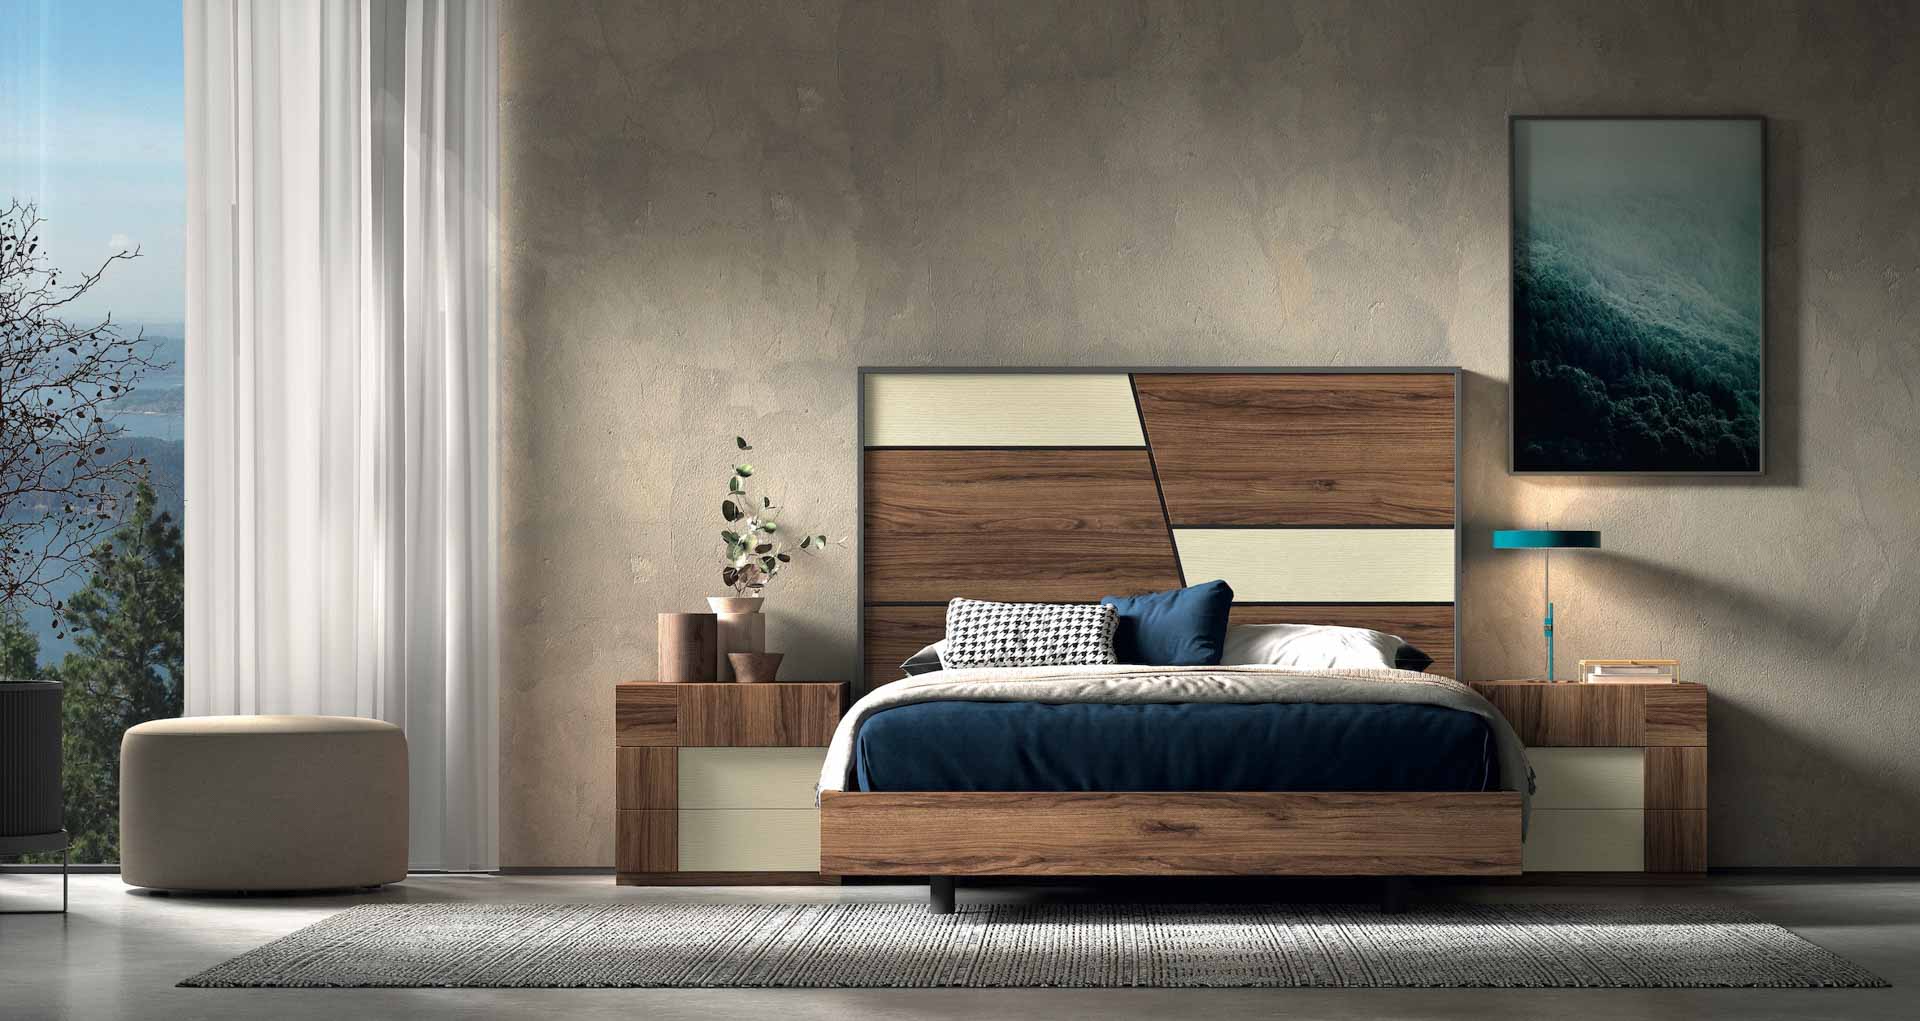 Diseño de mobiliario de dormitorio 70